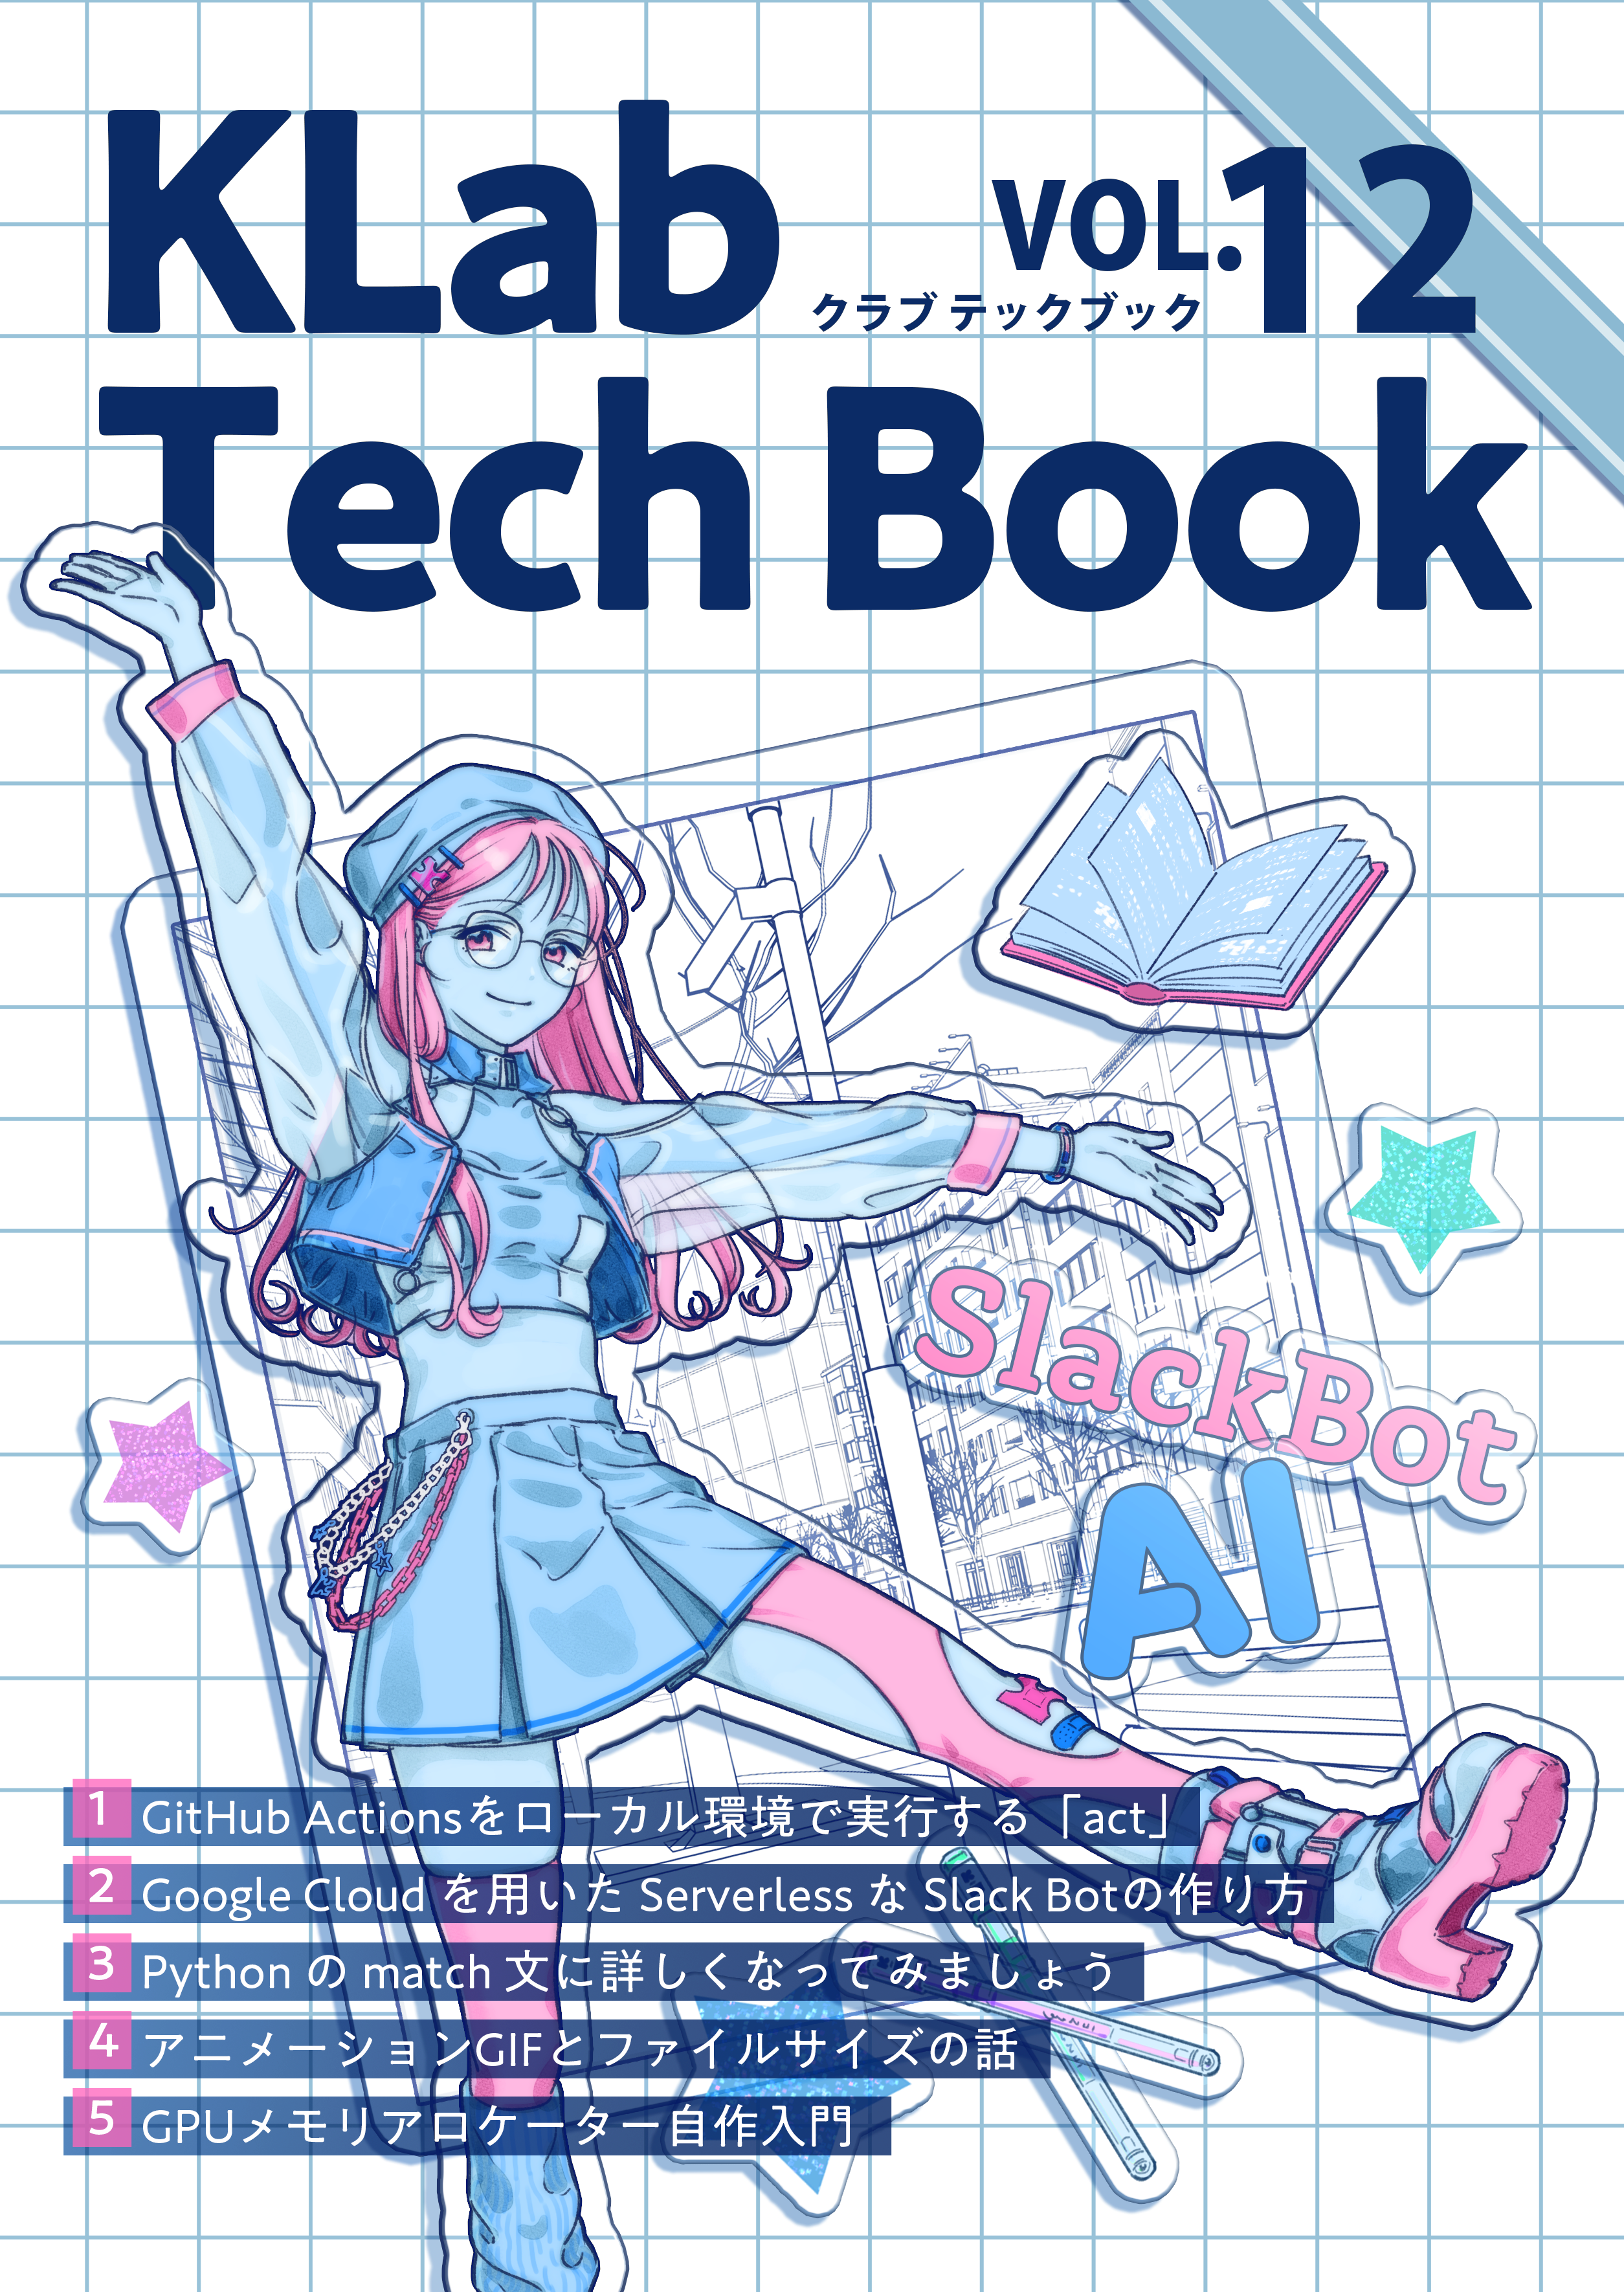 KLab Tech Book Vol. 12